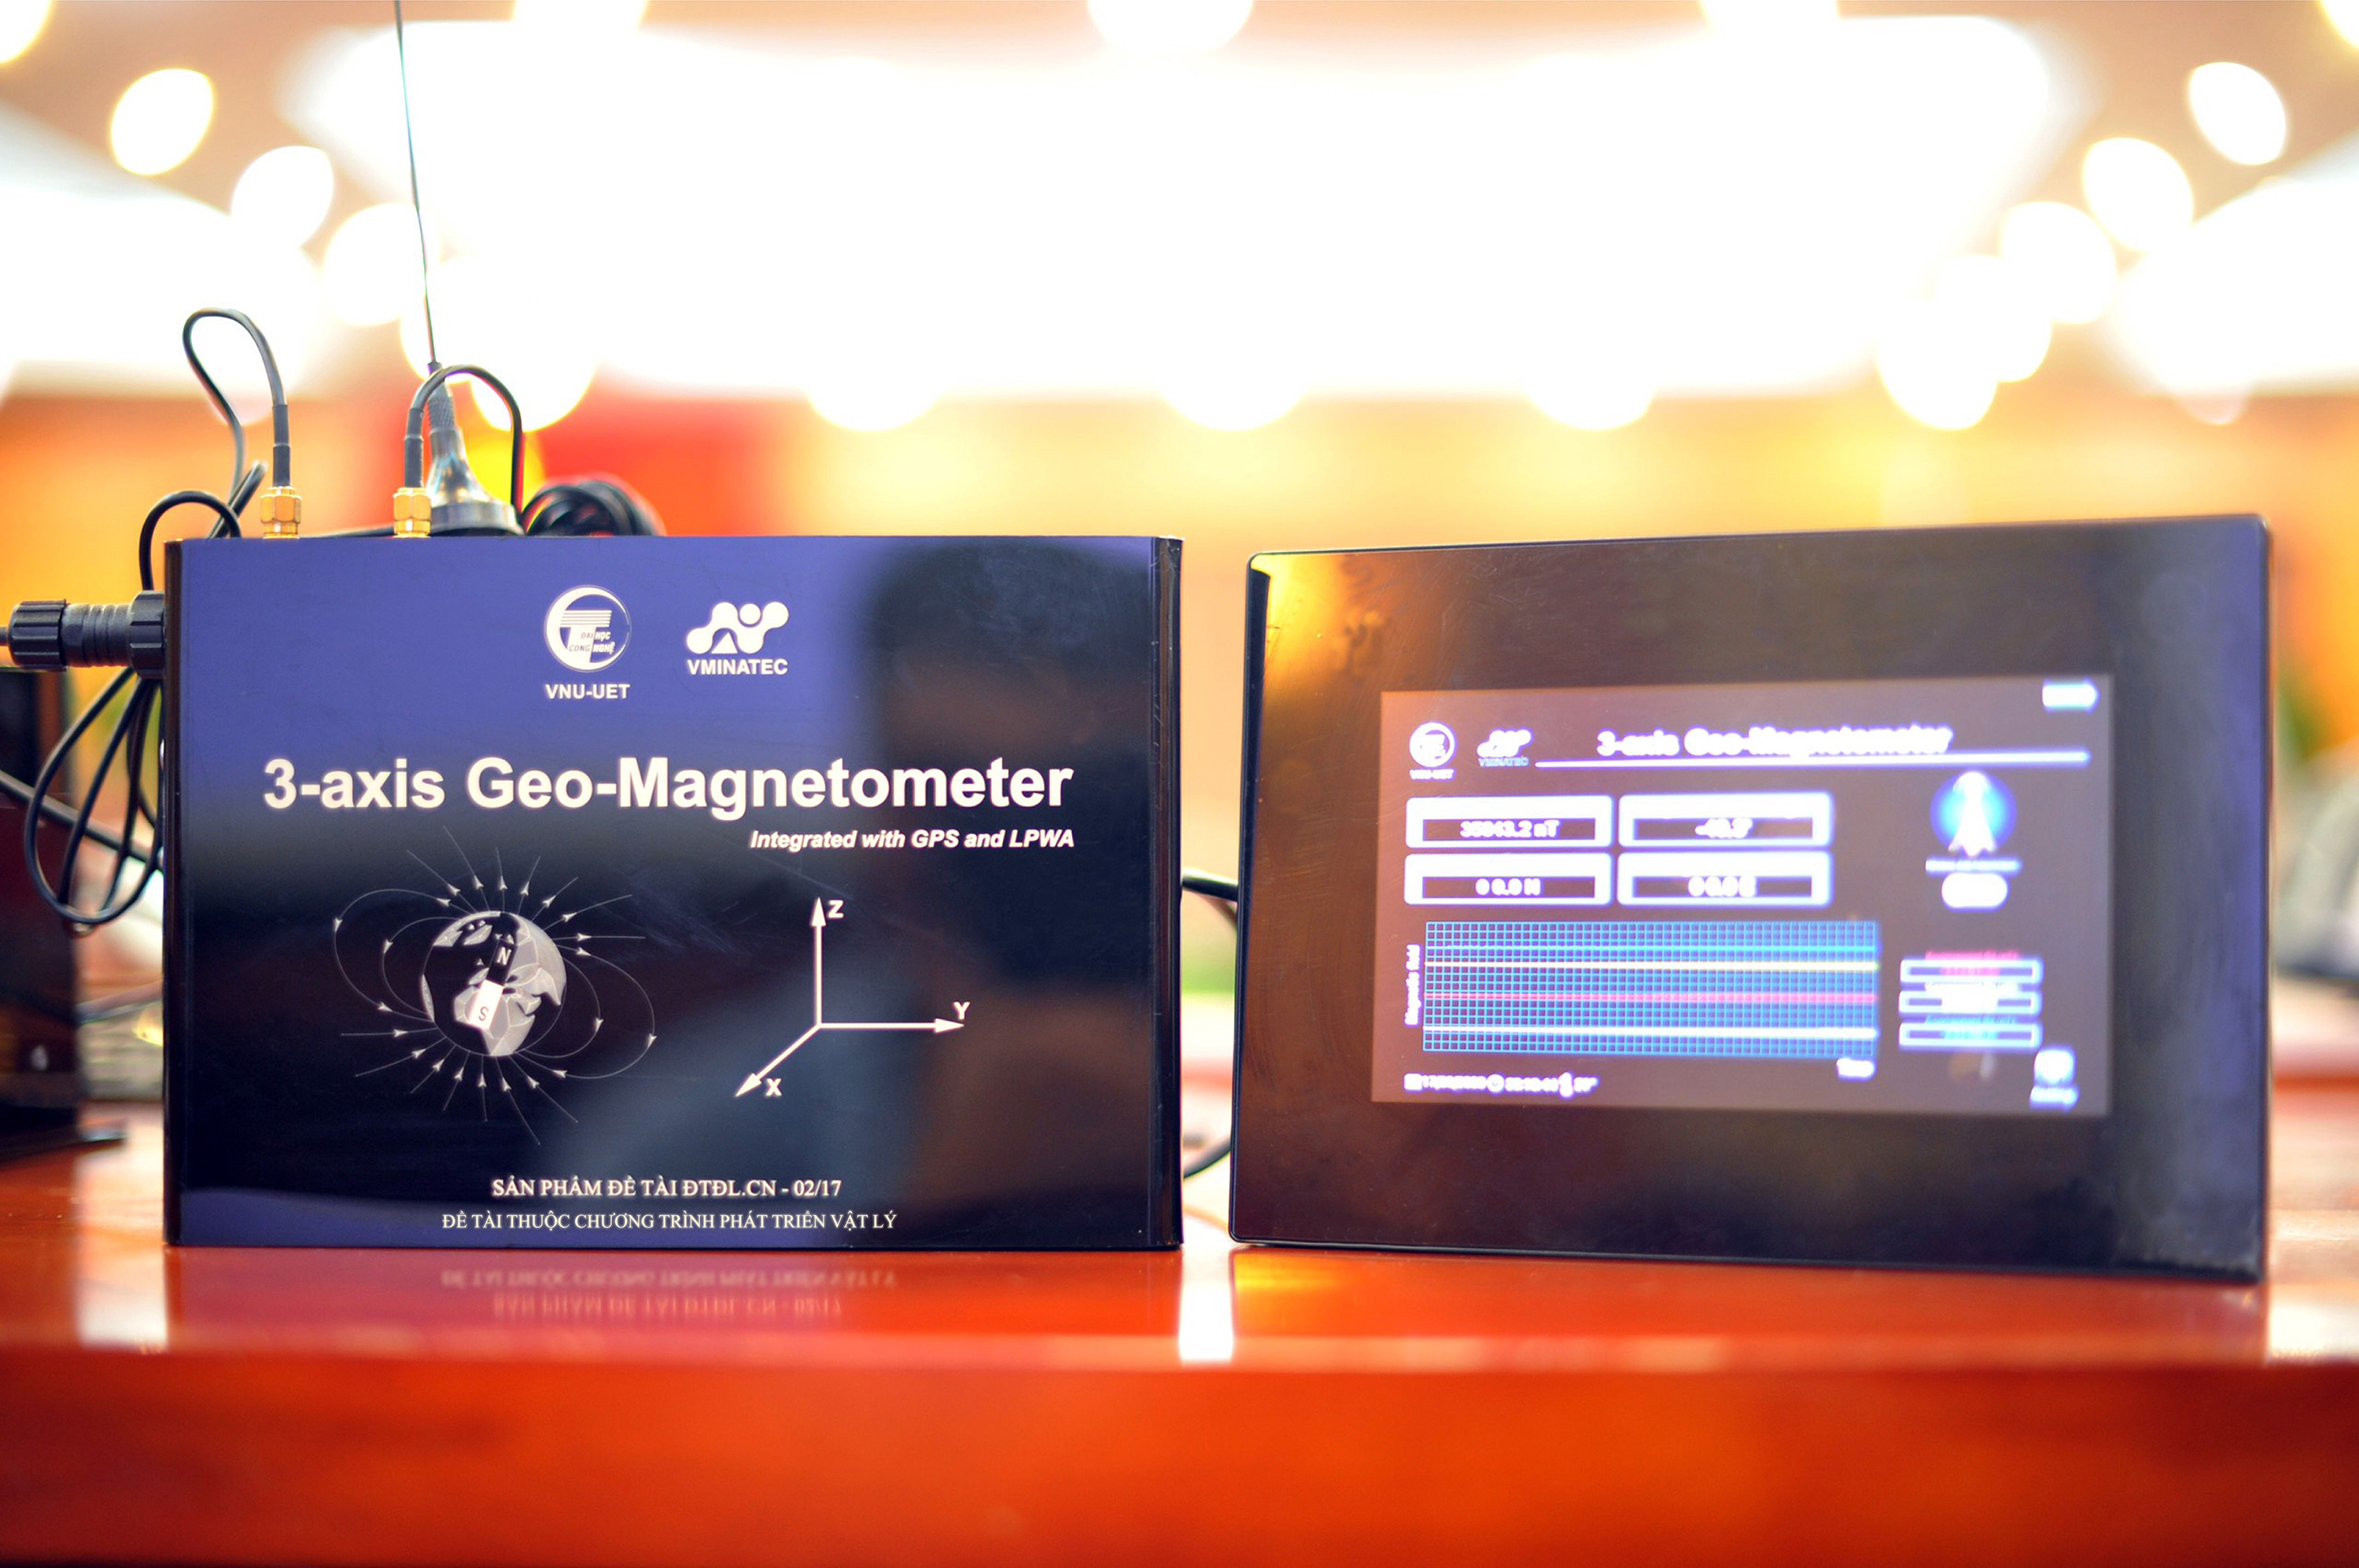 Hệ thống thiết bị đo từ trường Trái đất tích hợp kỹ thuật GPS và truyền phát không dây